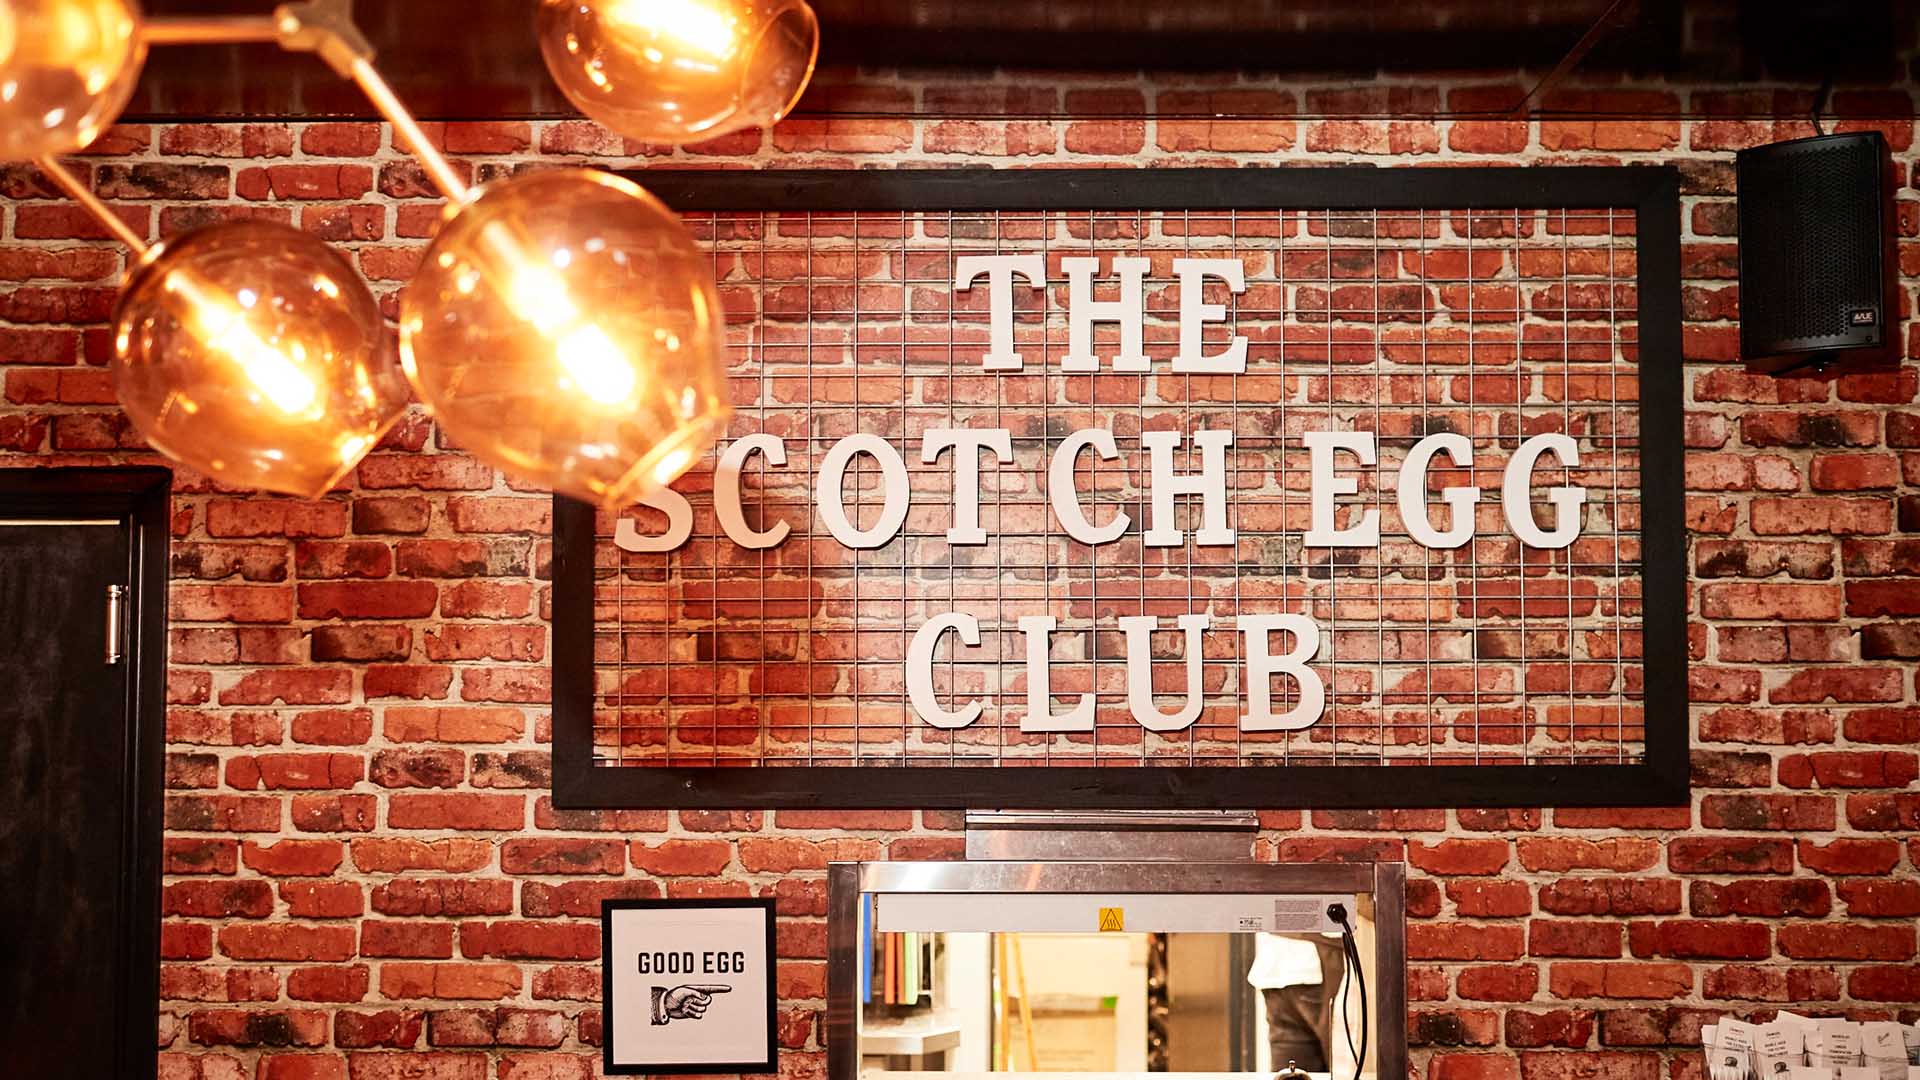 Dewar's Scotch Egg Club